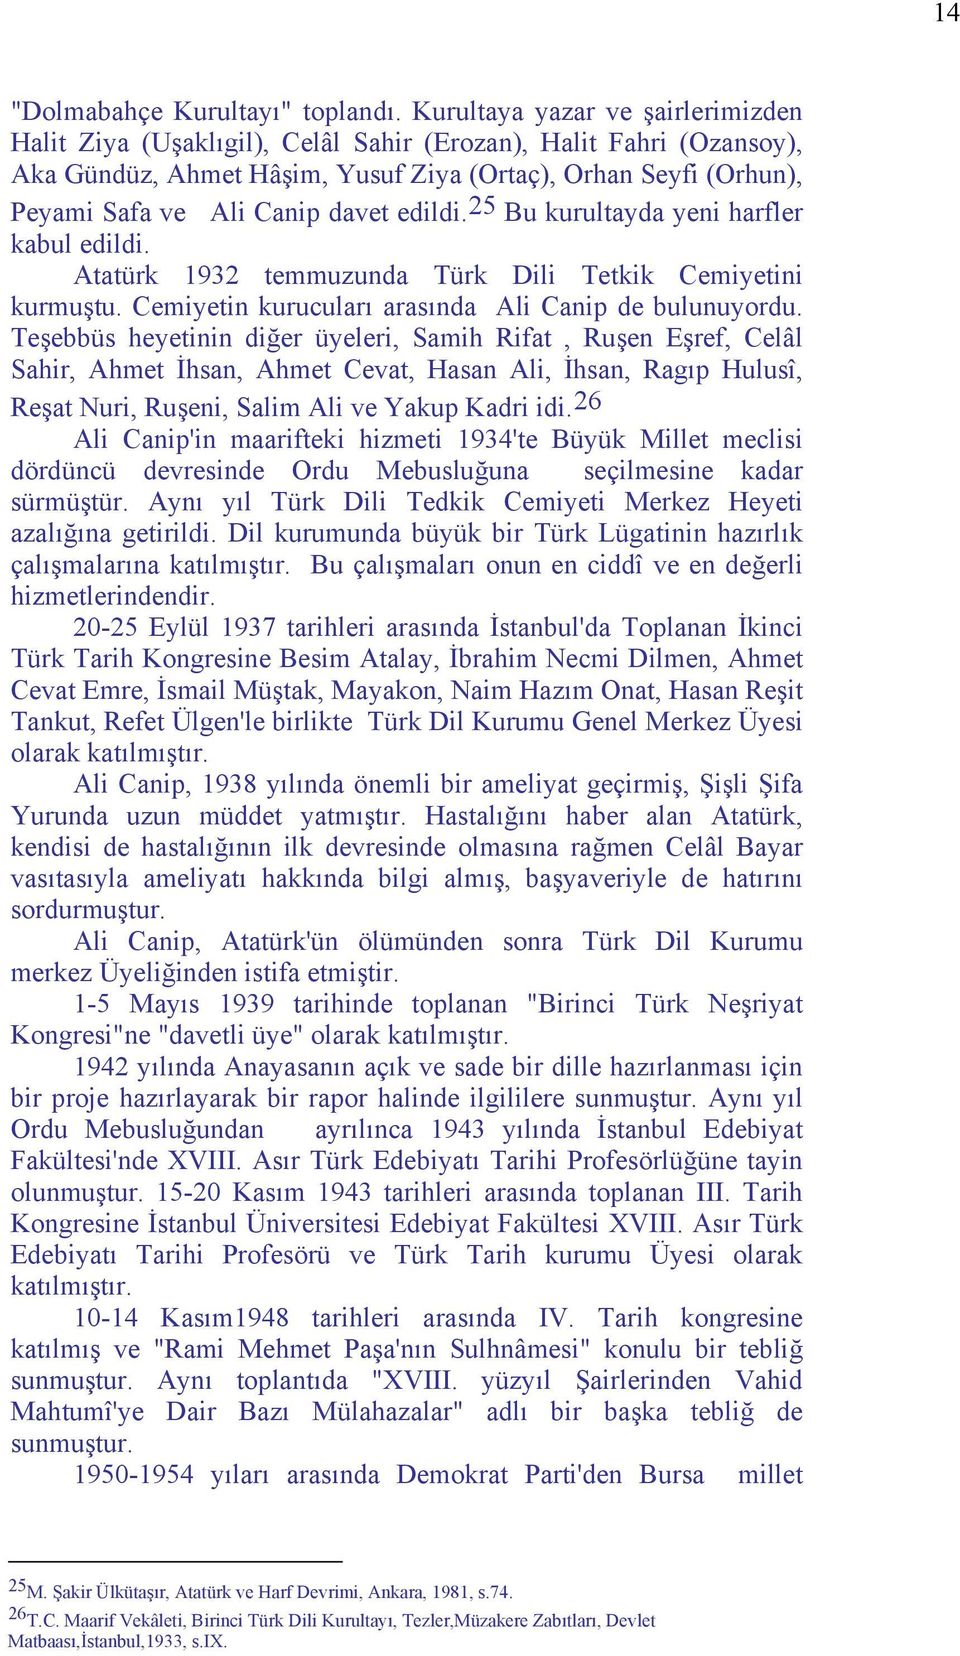 edildi. 25 Bu kurultayda yeni harfler kabul edildi. Atatürk 1932 temmuzunda Türk Dili Tetkik Cemiyetini kurmuştu. Cemiyetin kurucuları arasında Ali Canip de bulunuyordu.